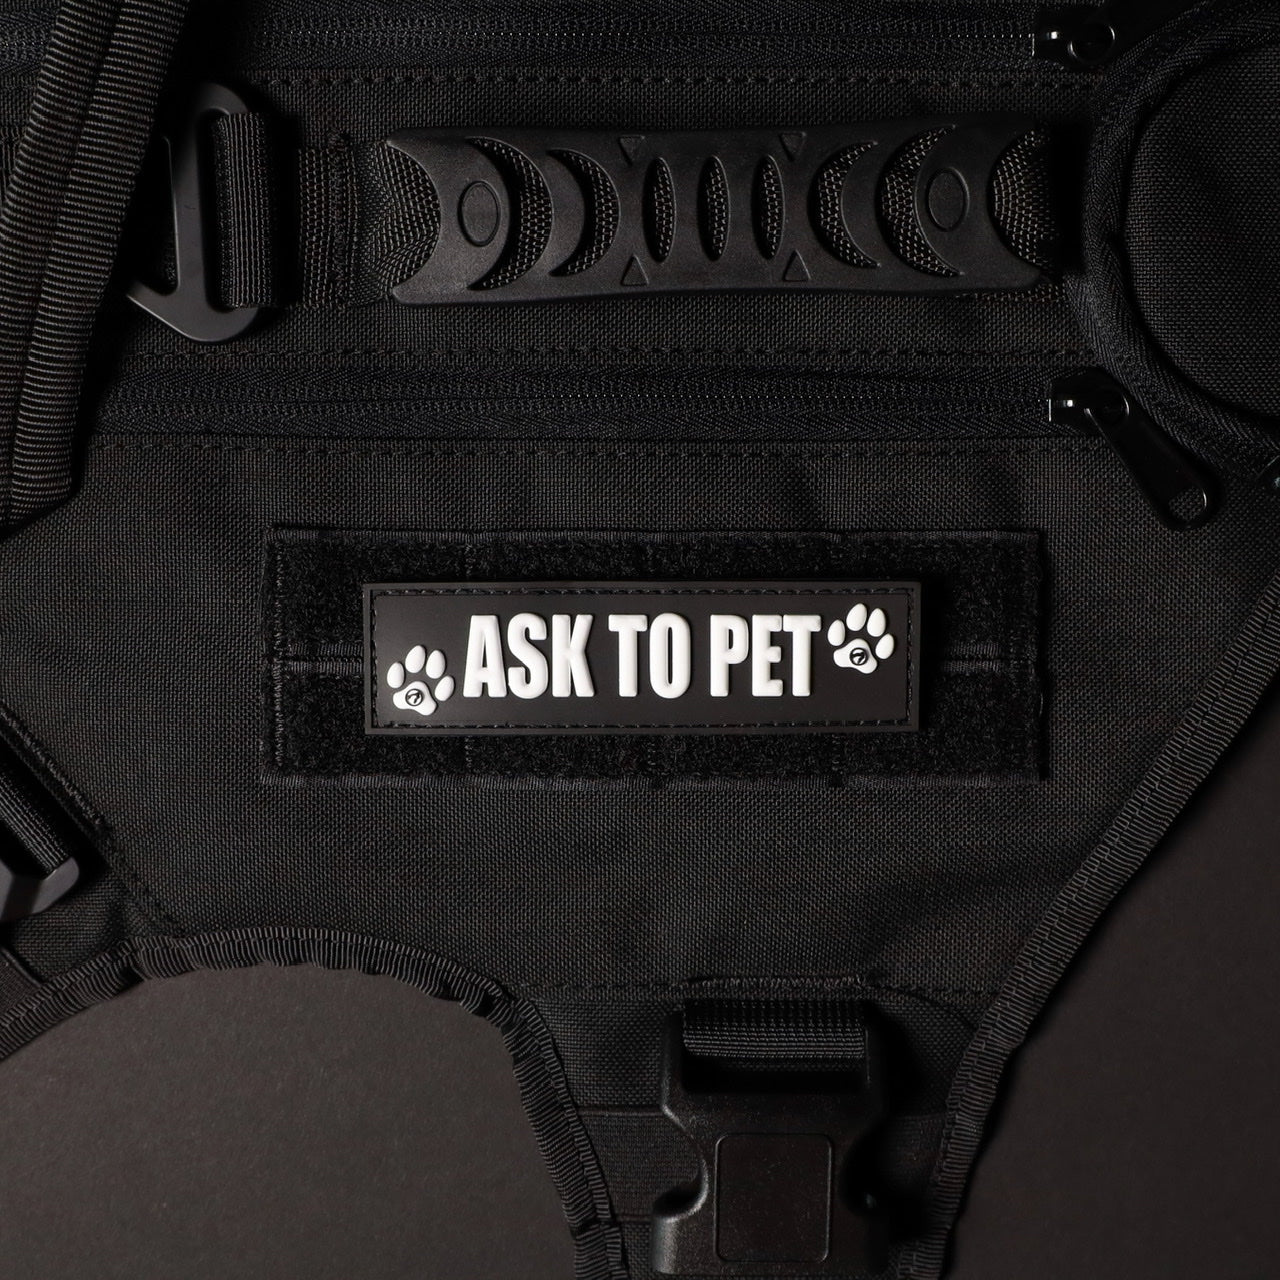 Ask To Pet